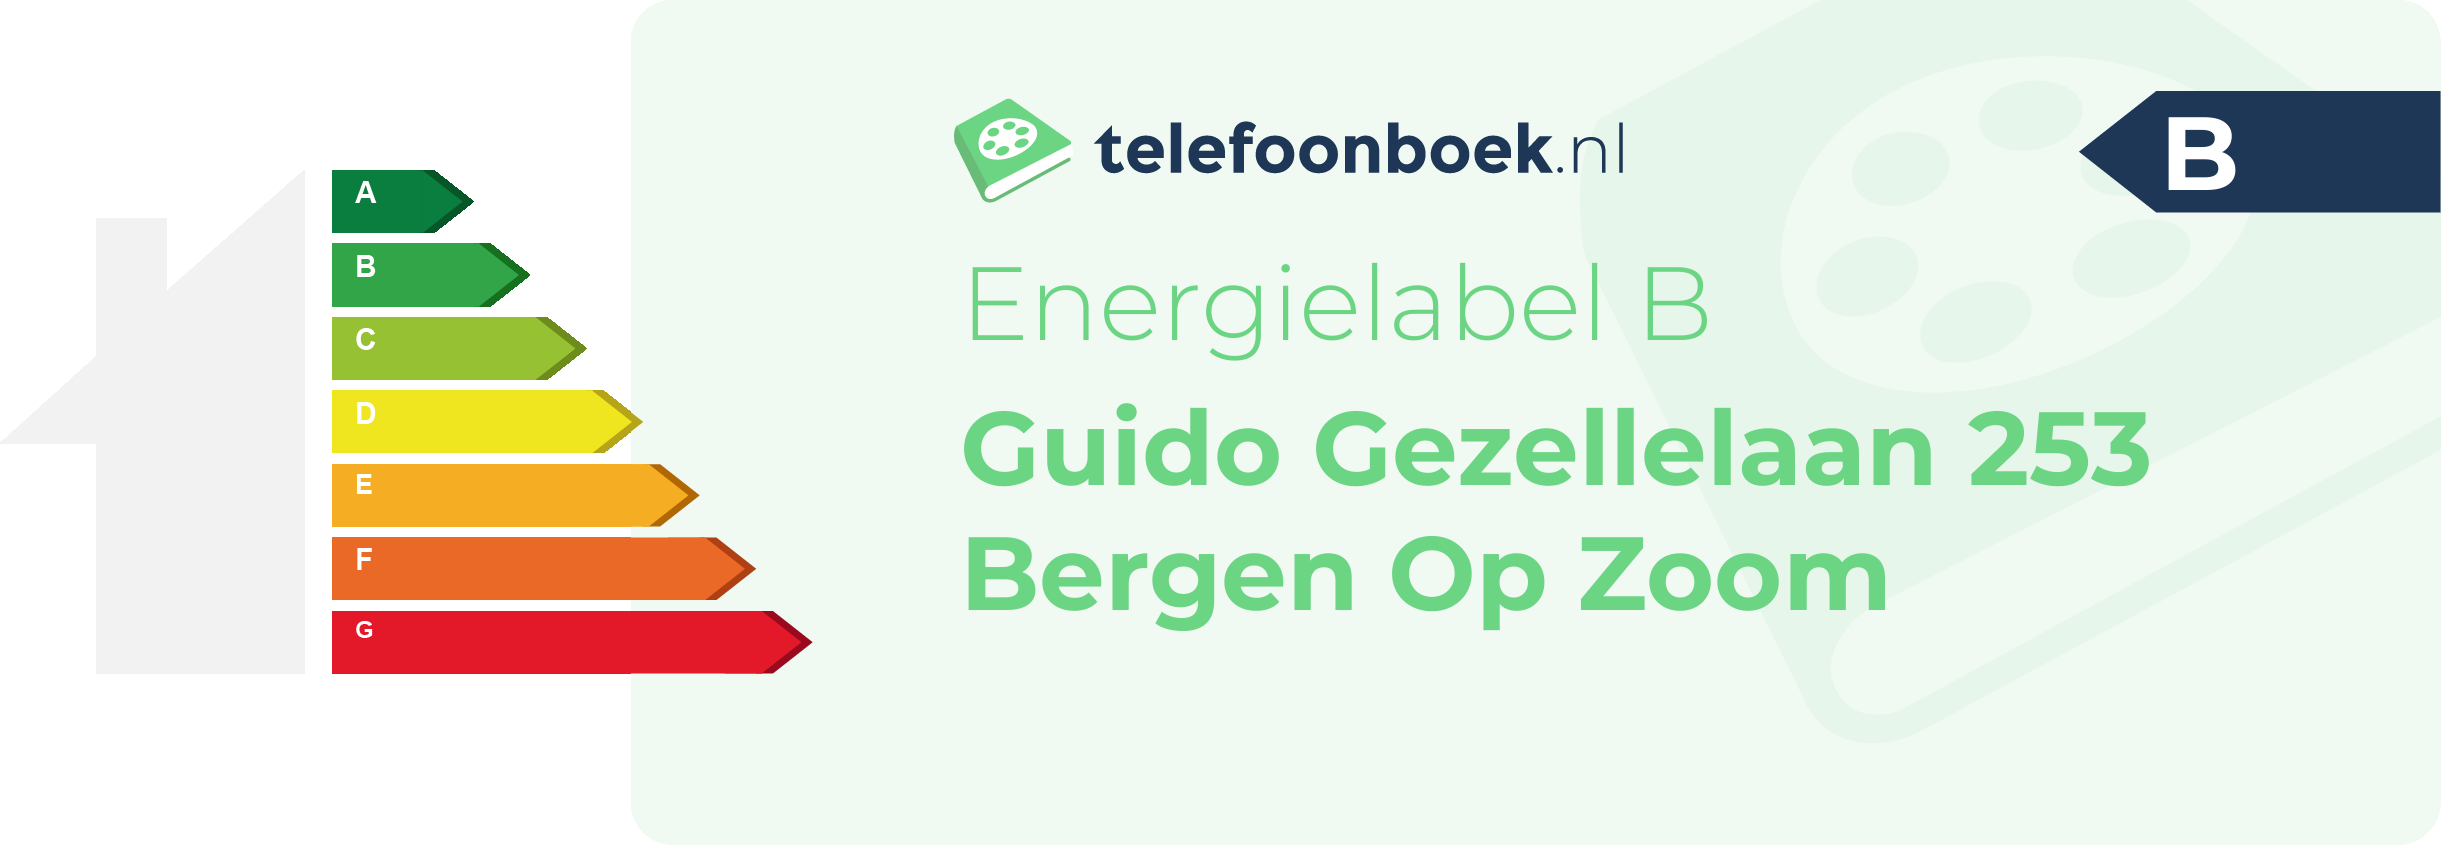 Energielabel Guido Gezellelaan 253 Bergen Op Zoom